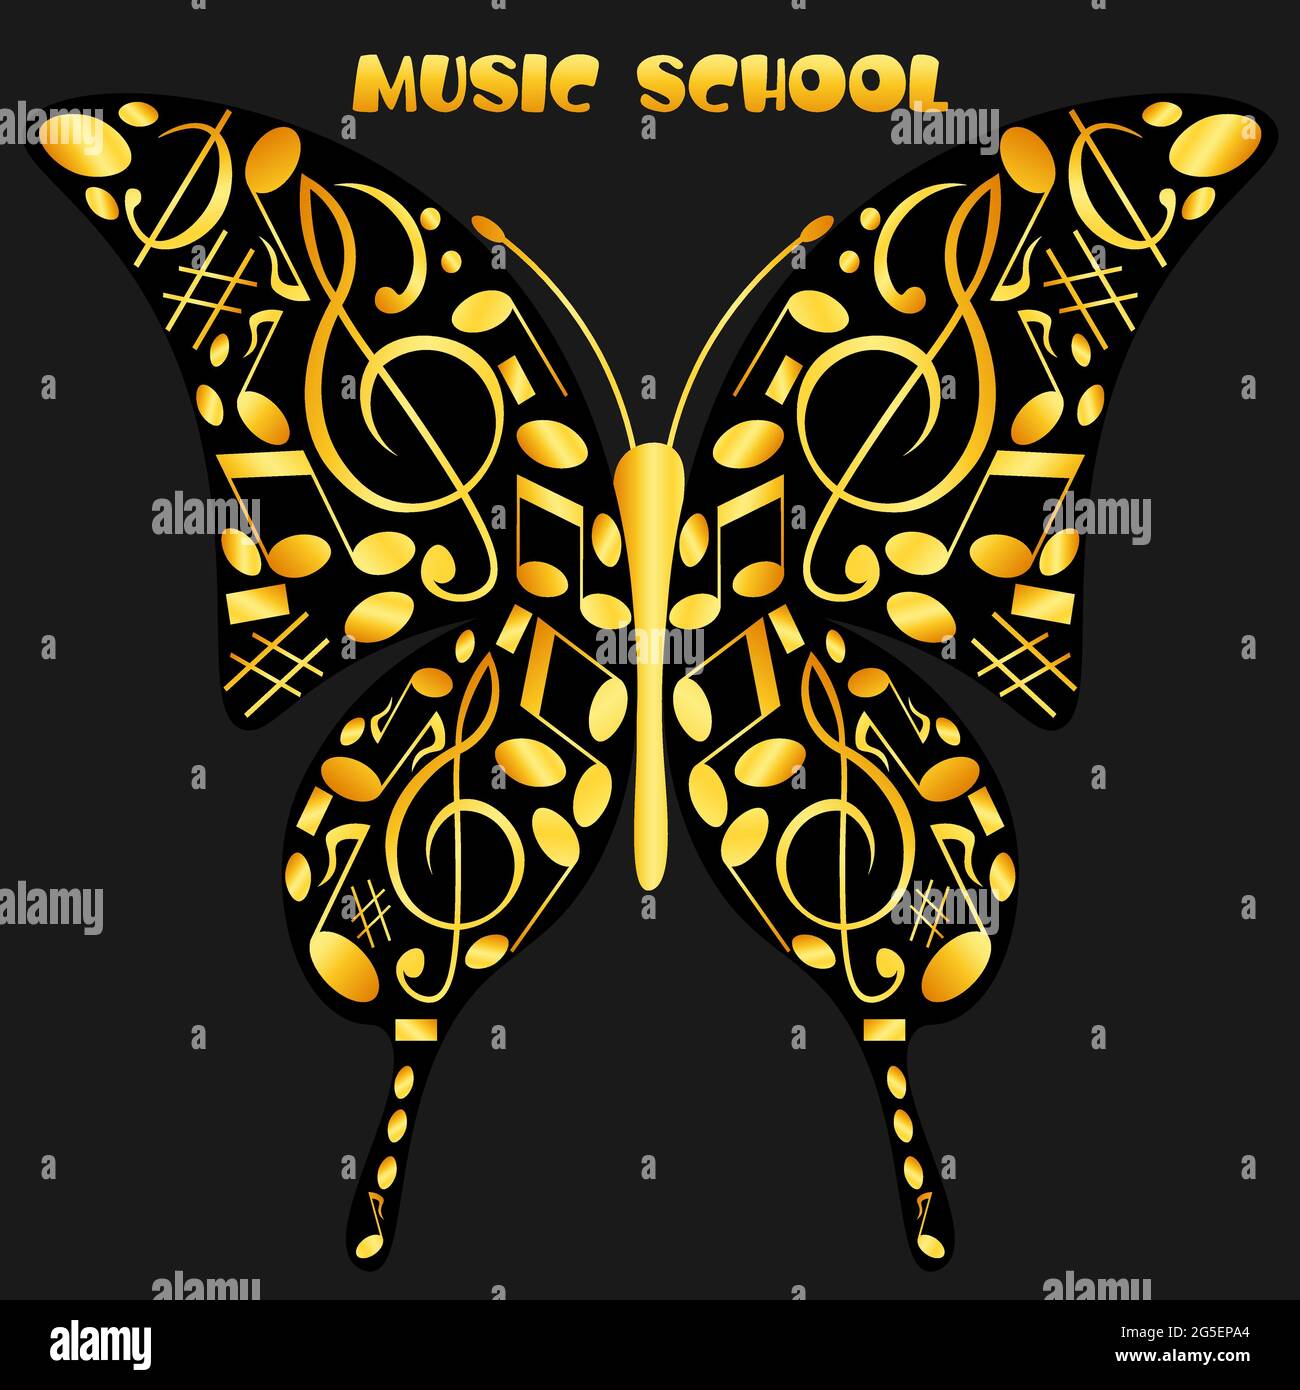 logo sous forme de papillon fait de notes musicales pour une école de musique 1 Illustration de Vecteur